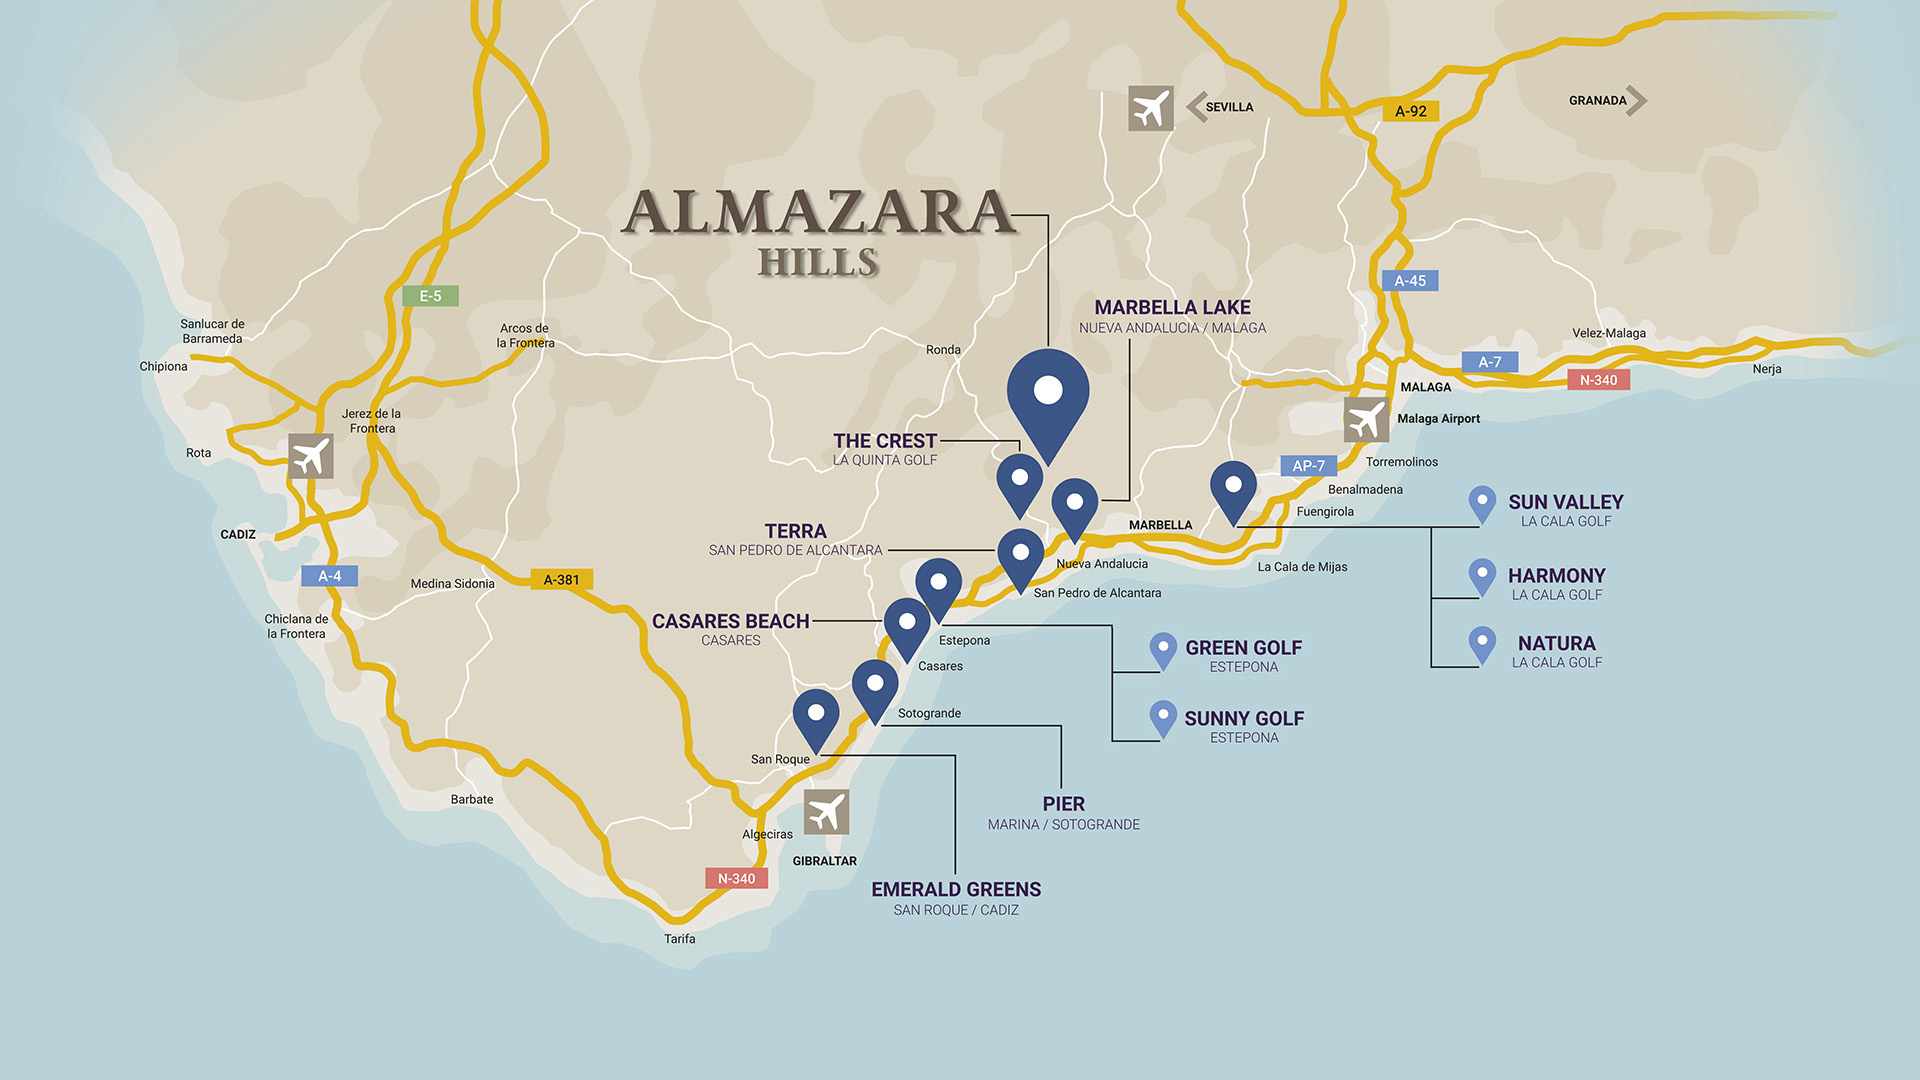 Mapa ALMAZARA eng